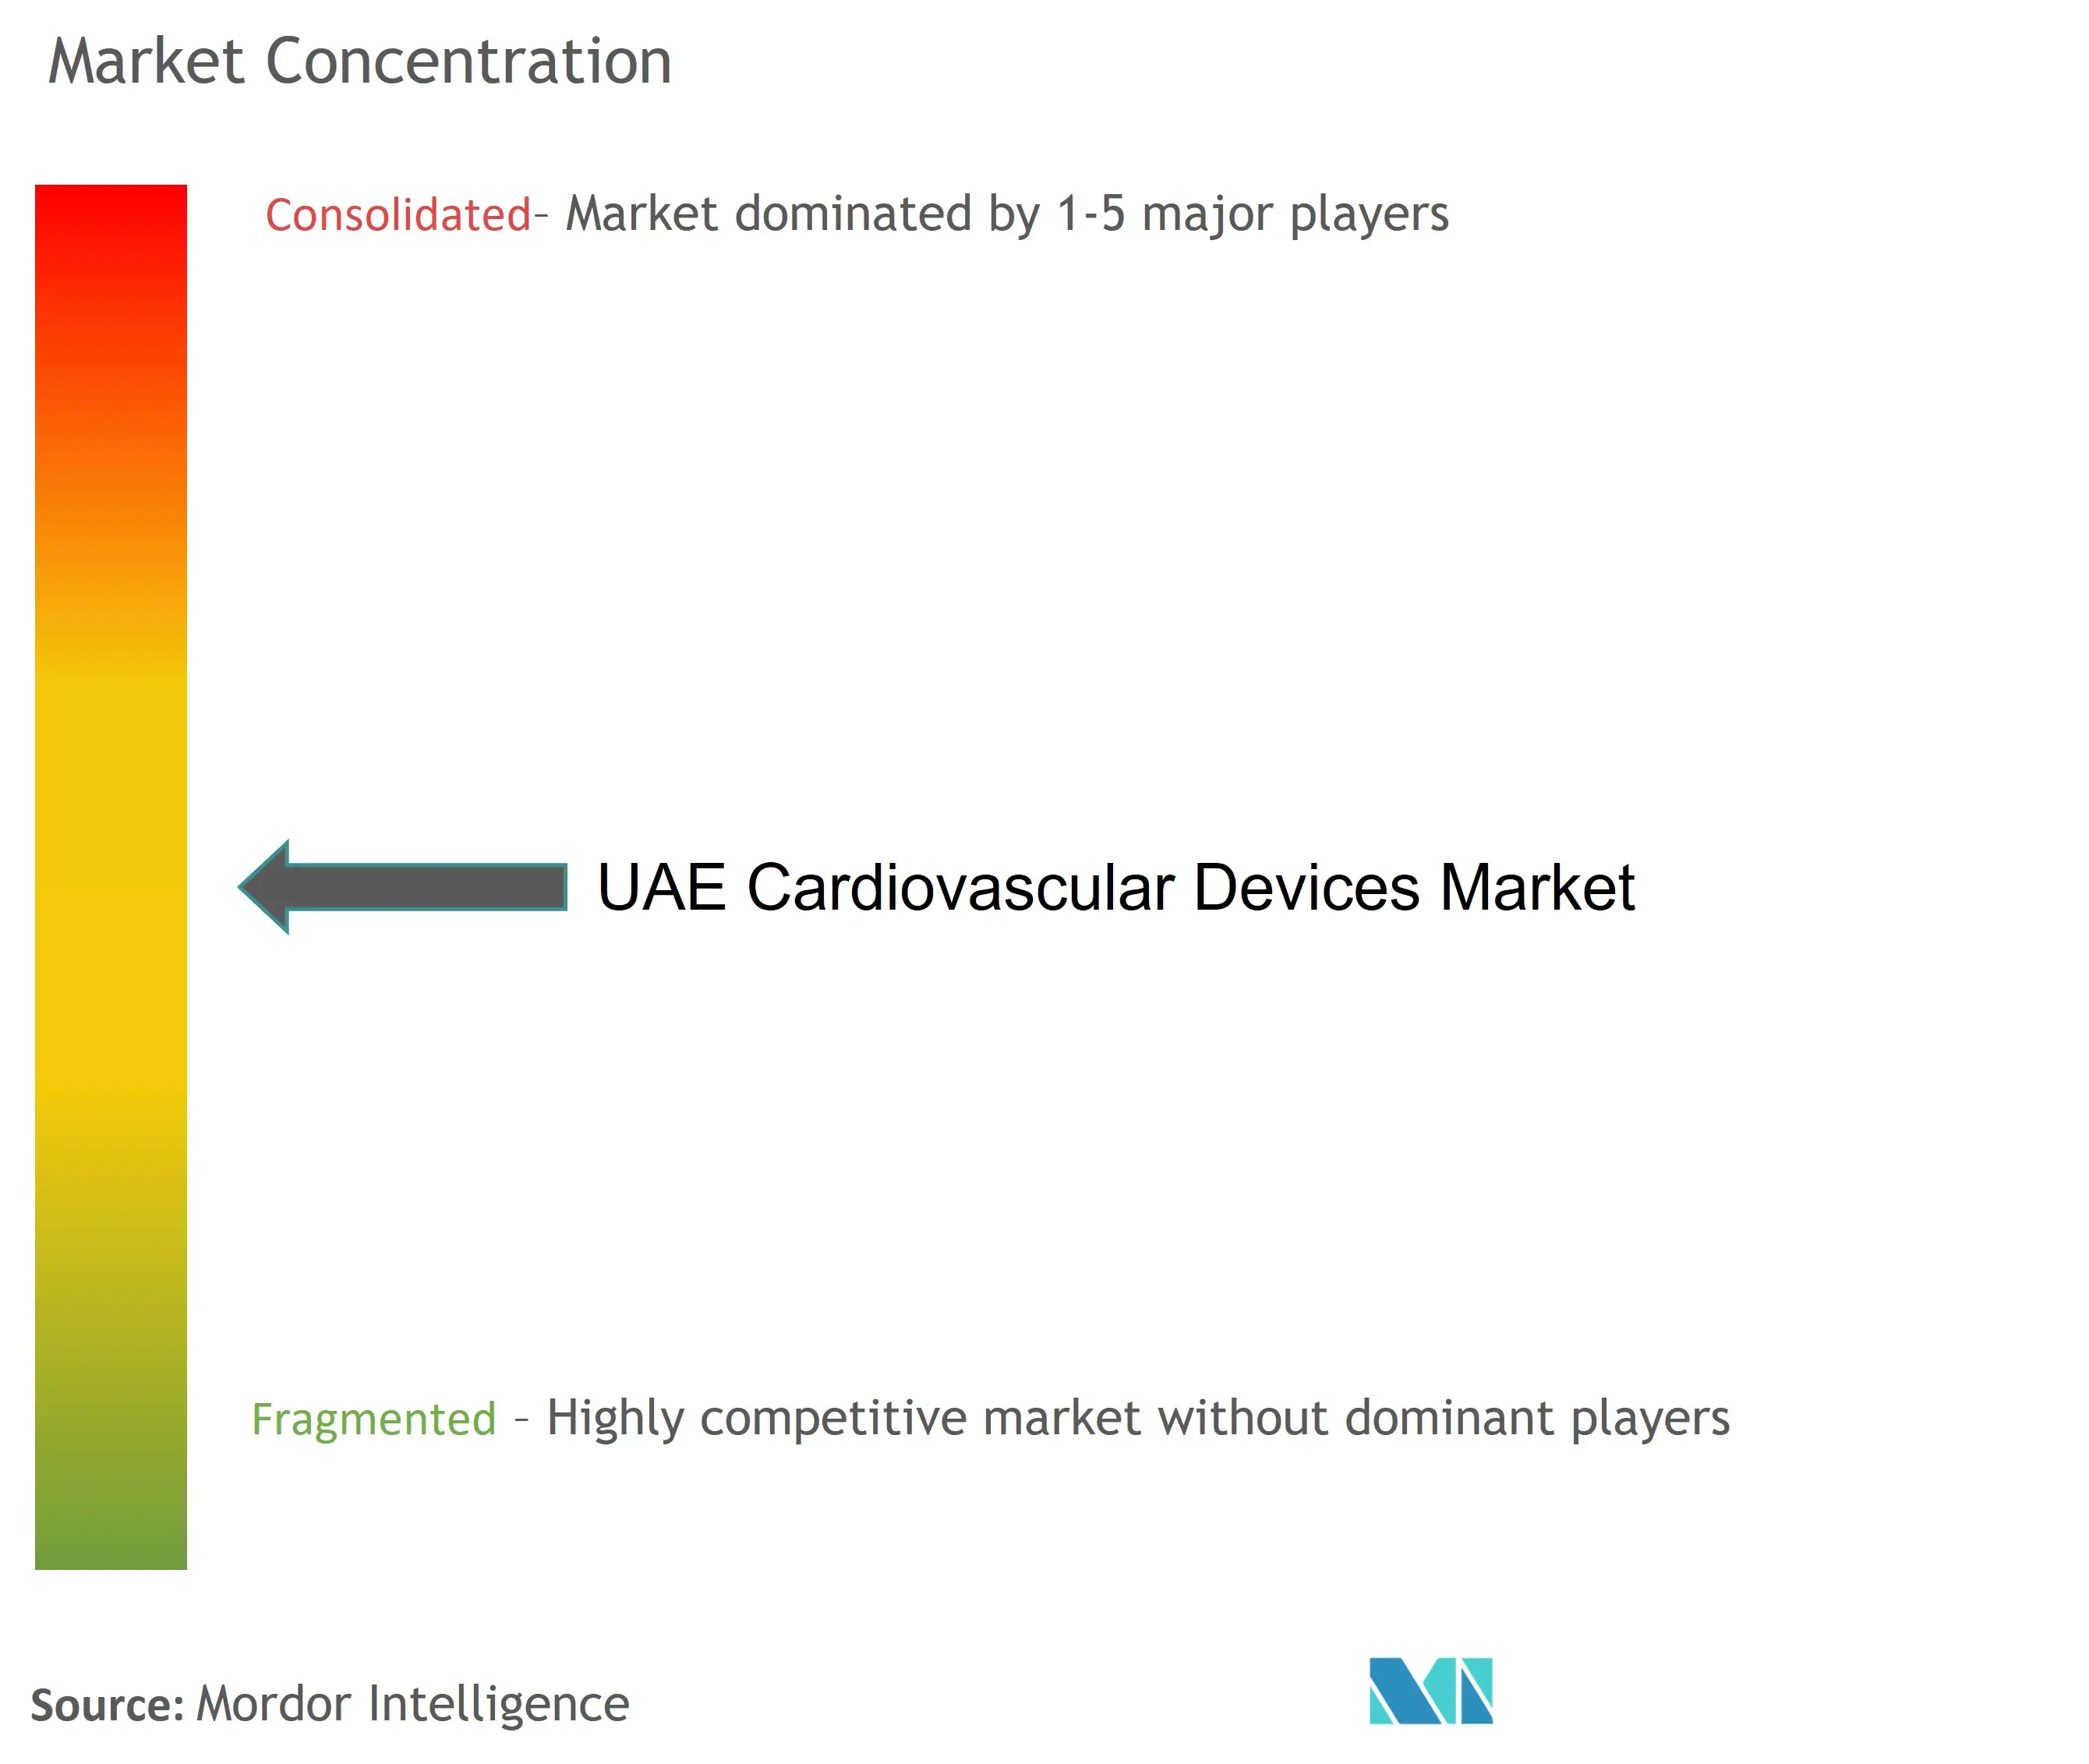 Marktkonzentration für kardiovaskuläre Geräte in den Vereinigten Arabischen Emiraten